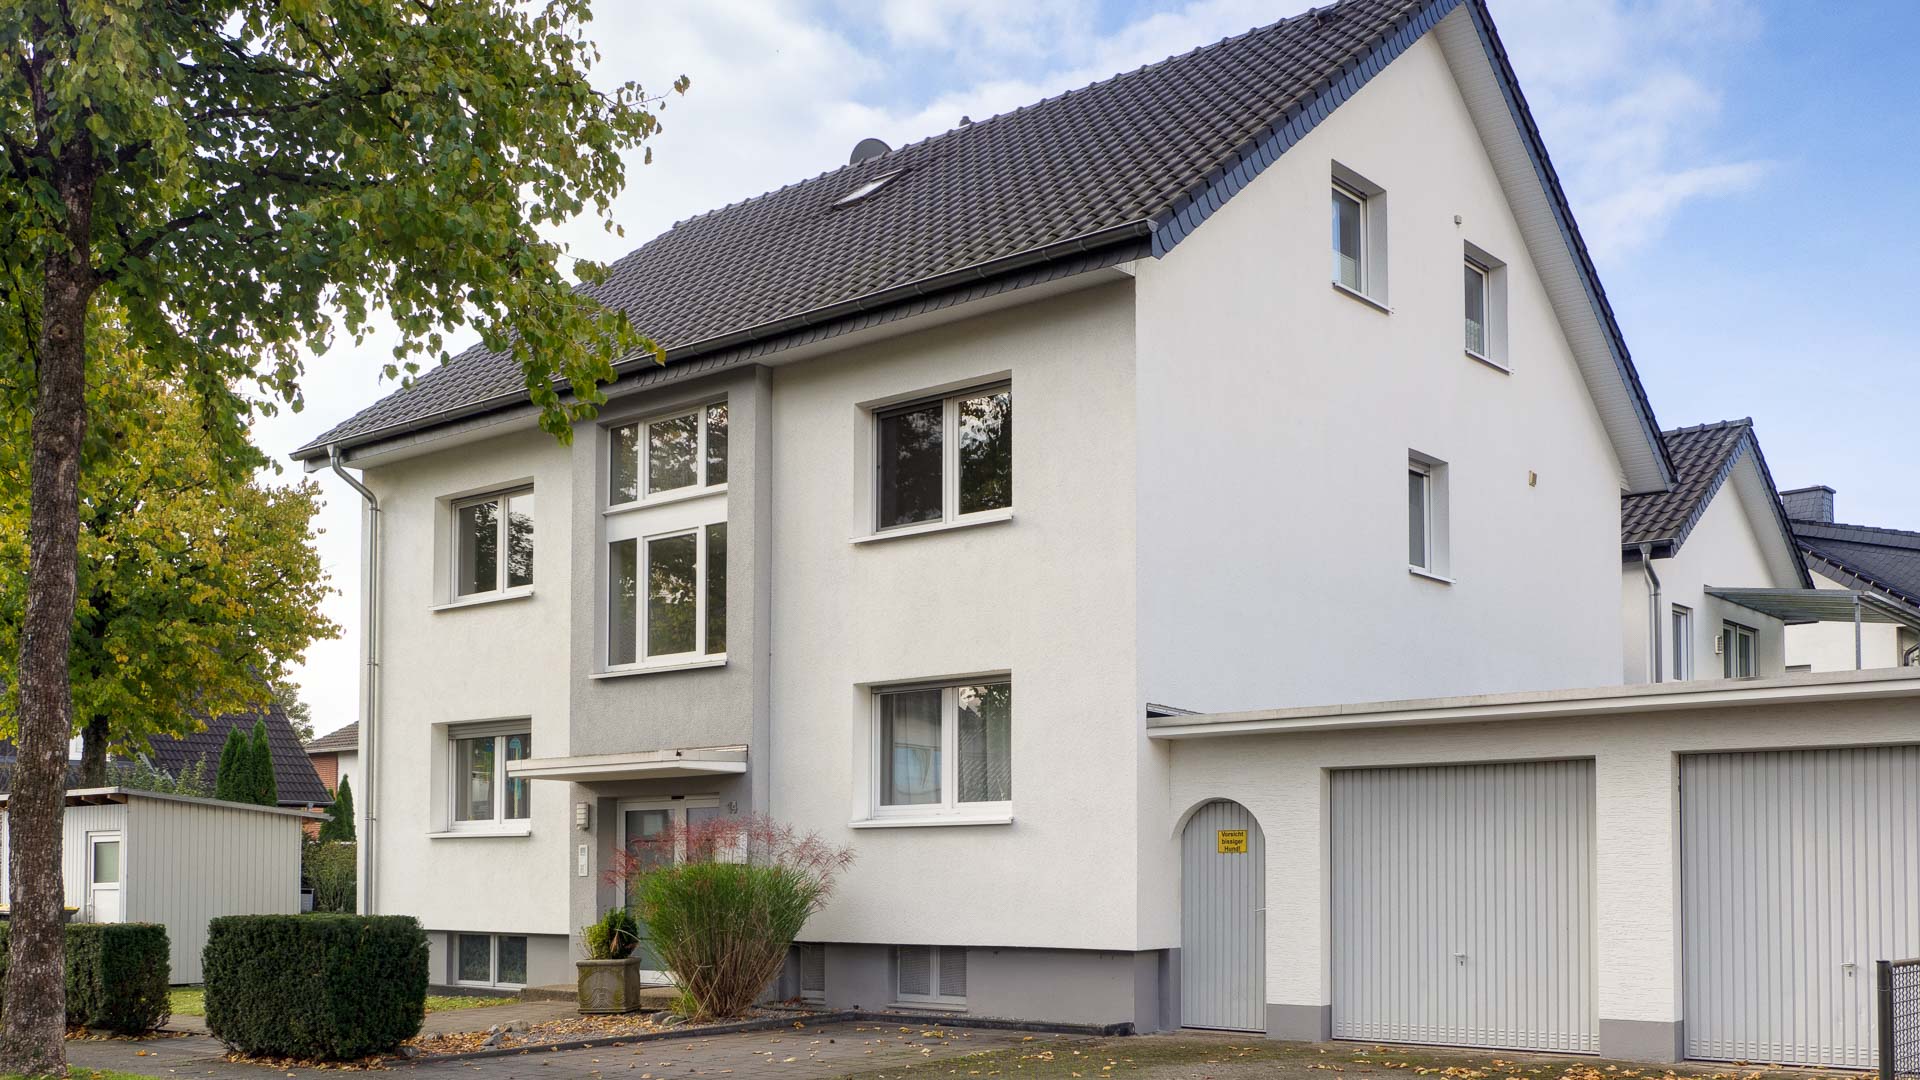 Thater Immobilien GmbH - Immobilienangebot - Paderborn - Wohnungen - 5802 |NEU: Wohnung in 33104 Paderborn - Für Käufer provisionsfrei!